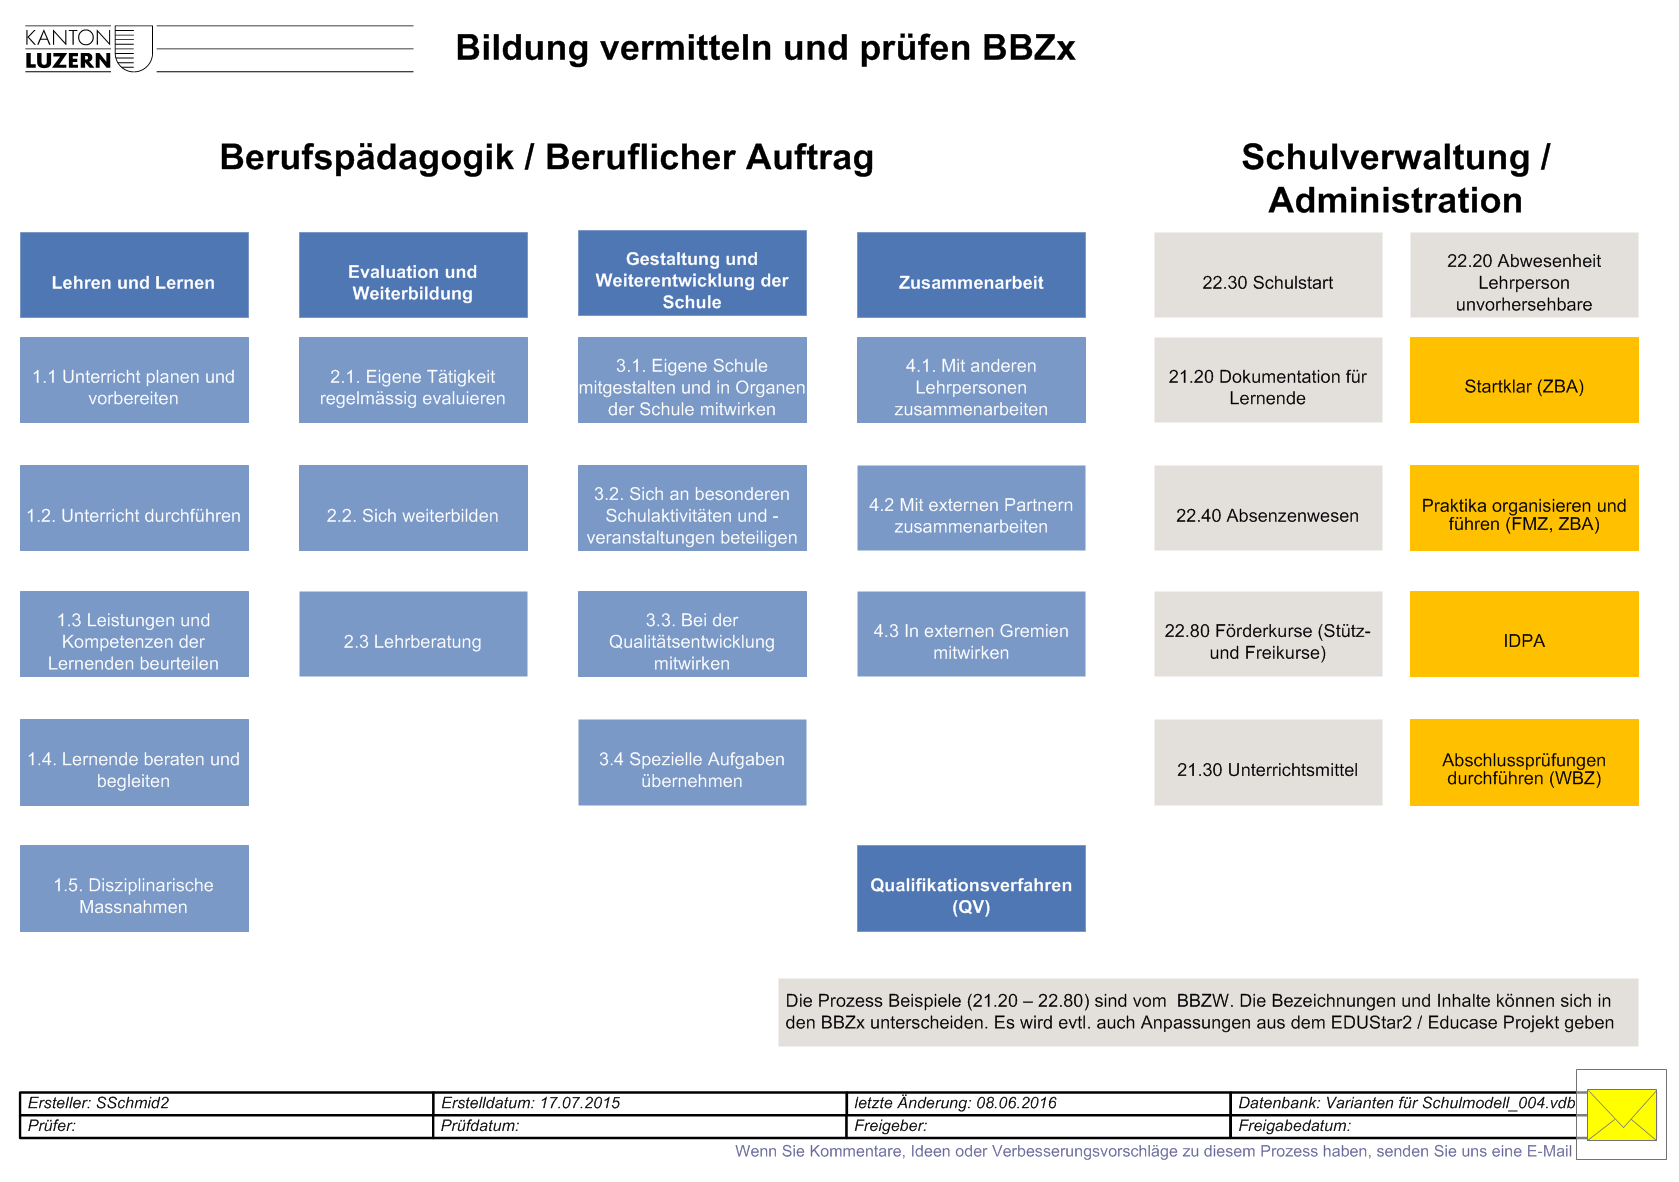 Prozesslandkarte BBZx (Sicht Verwaltung/Führung) 1. Priorität: Für die Kernprozesse werden DBW-Prozesse gemäss Kriterien eingesetzt, u.a. zum Thema Unterricht (inklusive Beruflicher Auftrag) und Schulverwaltung.